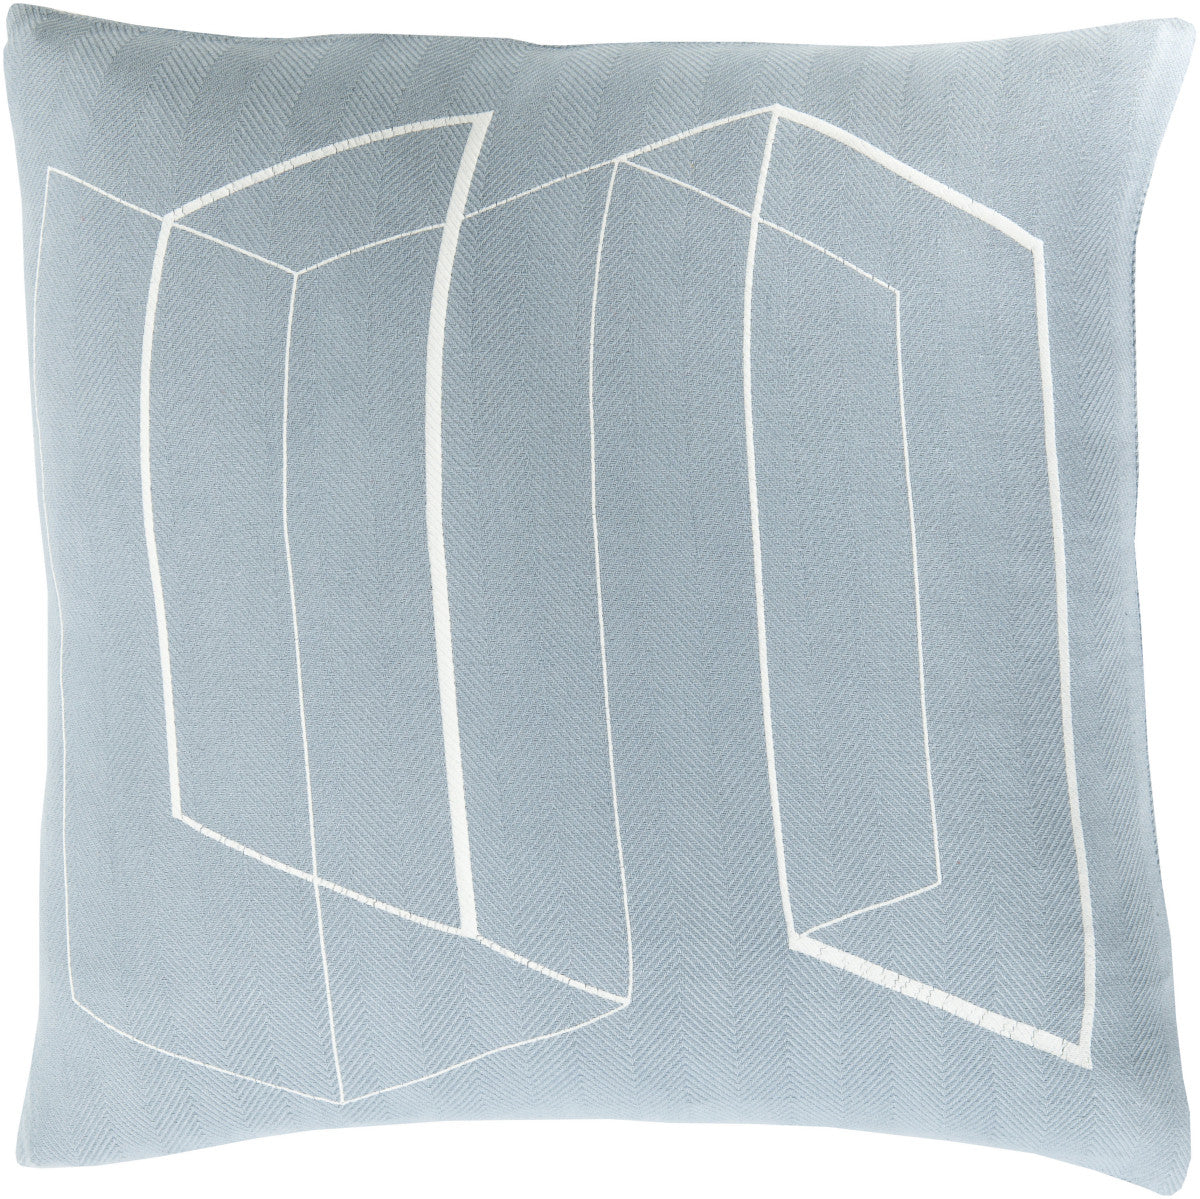 Surya Teori Lines and Angles TO-010 Pillow